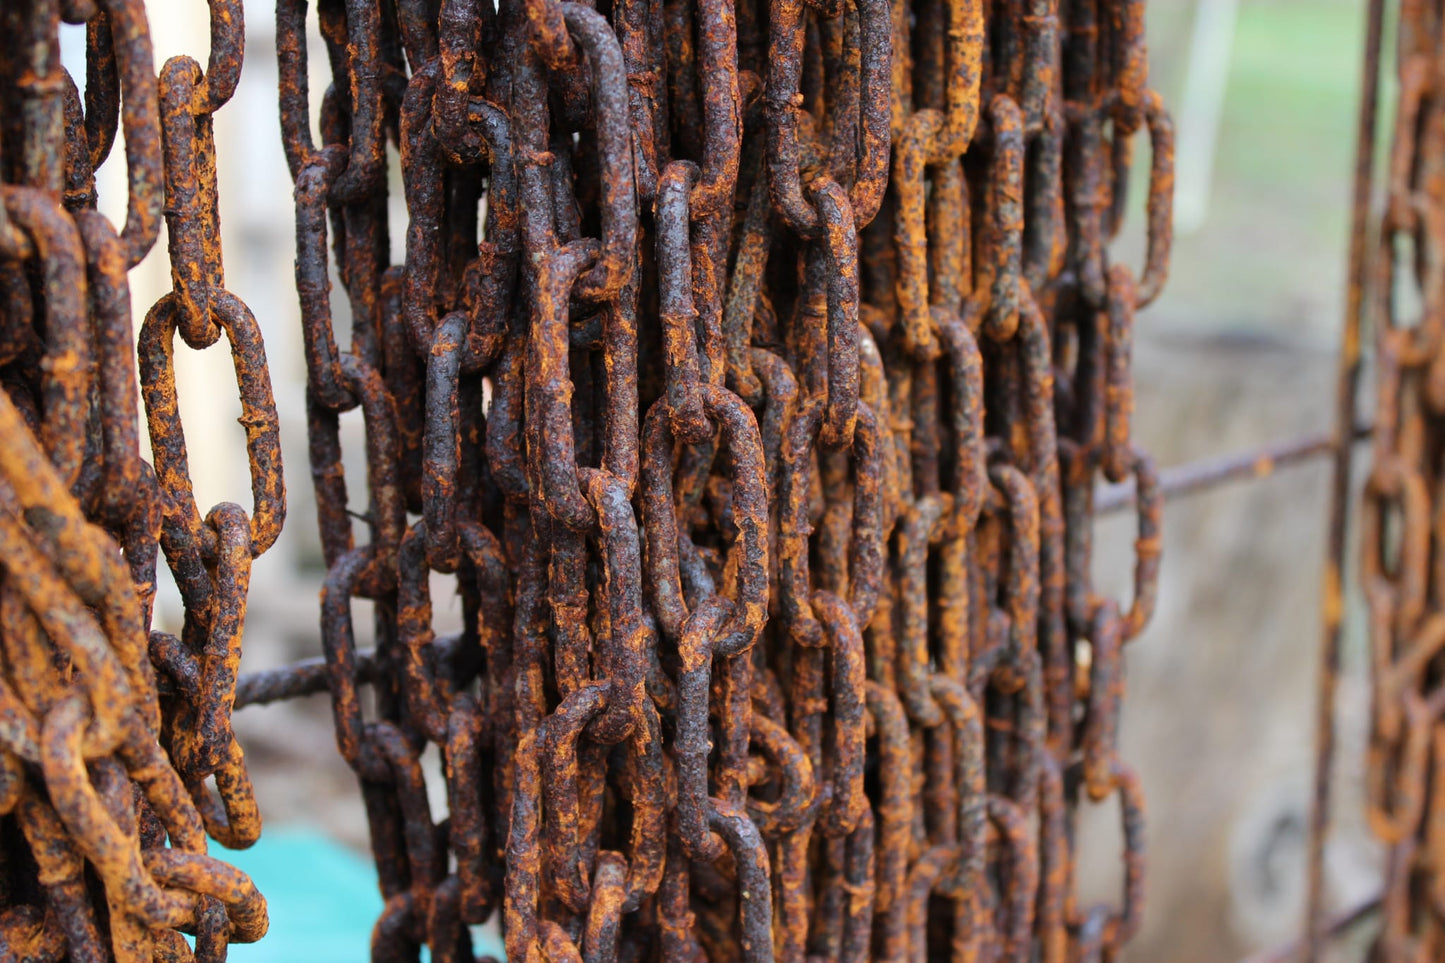 vitaliano arrugginito acciaio catena link merce cantiere, 3 metri, 5 millimetri di spessore, catena di ferro in stile antico, retrò, vintage, come catena di scarico pioggia, catena anello - Bild 6